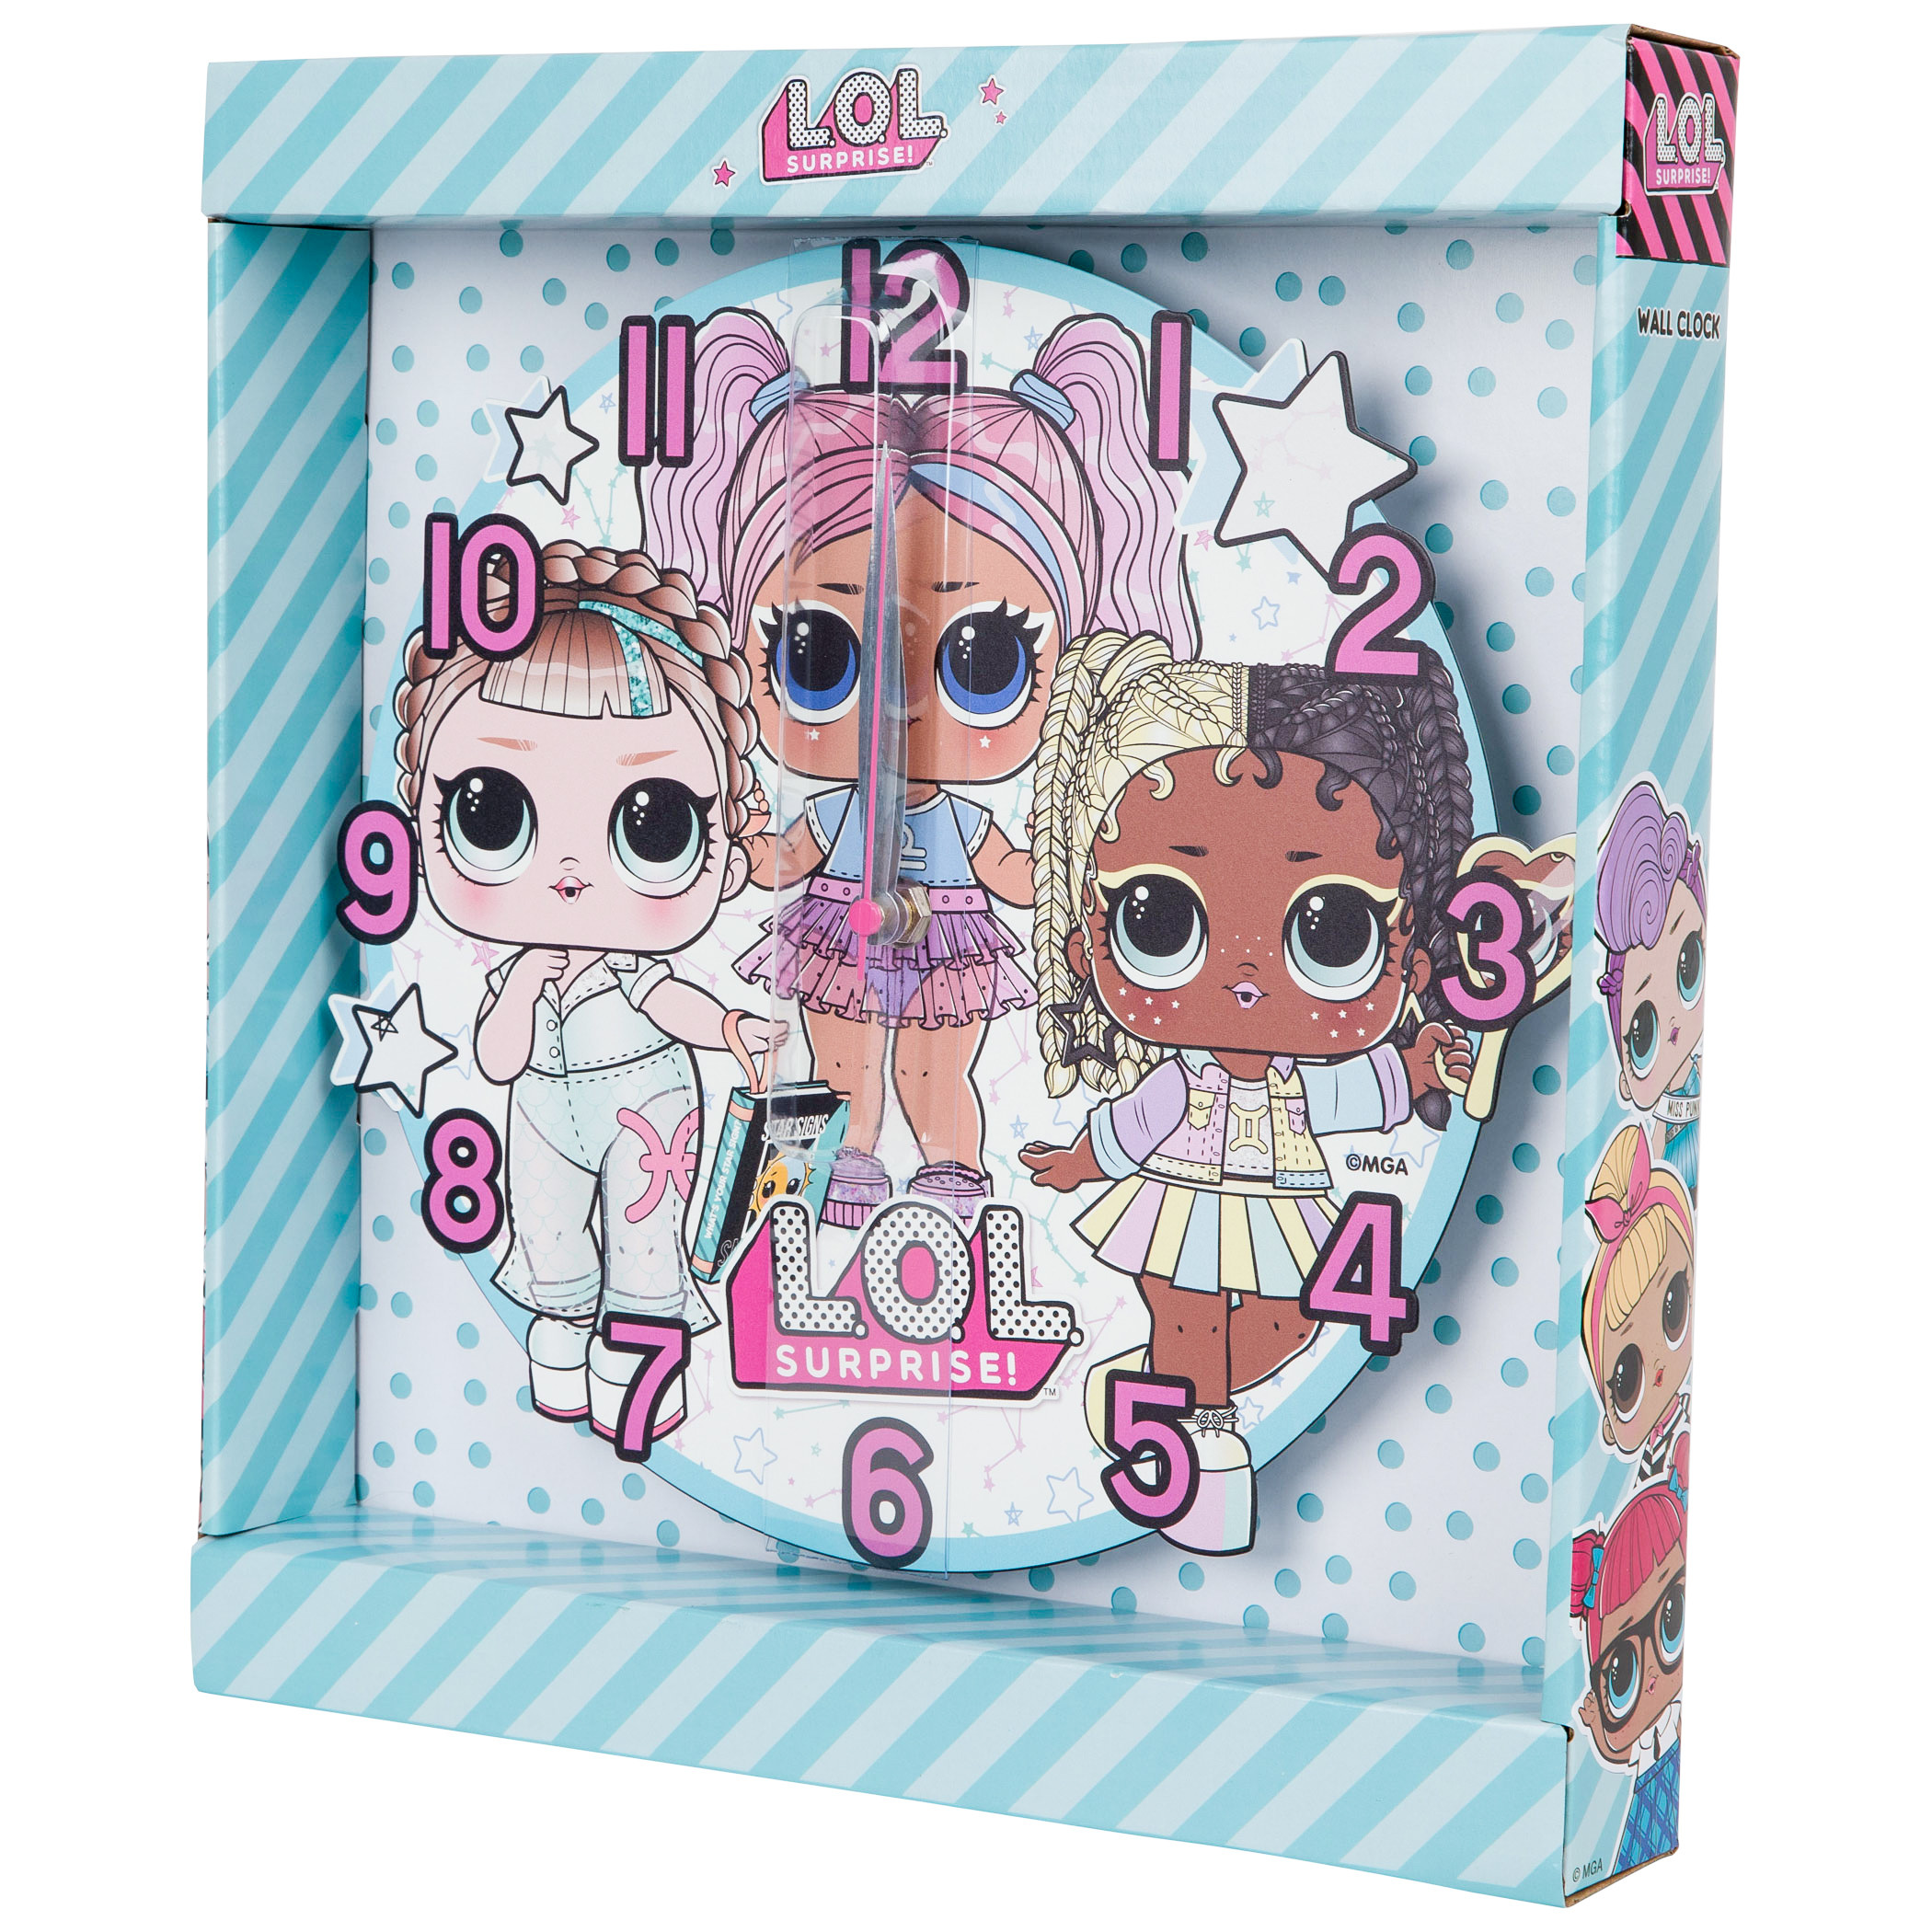 LOL Suprise Dolls Wall Clock